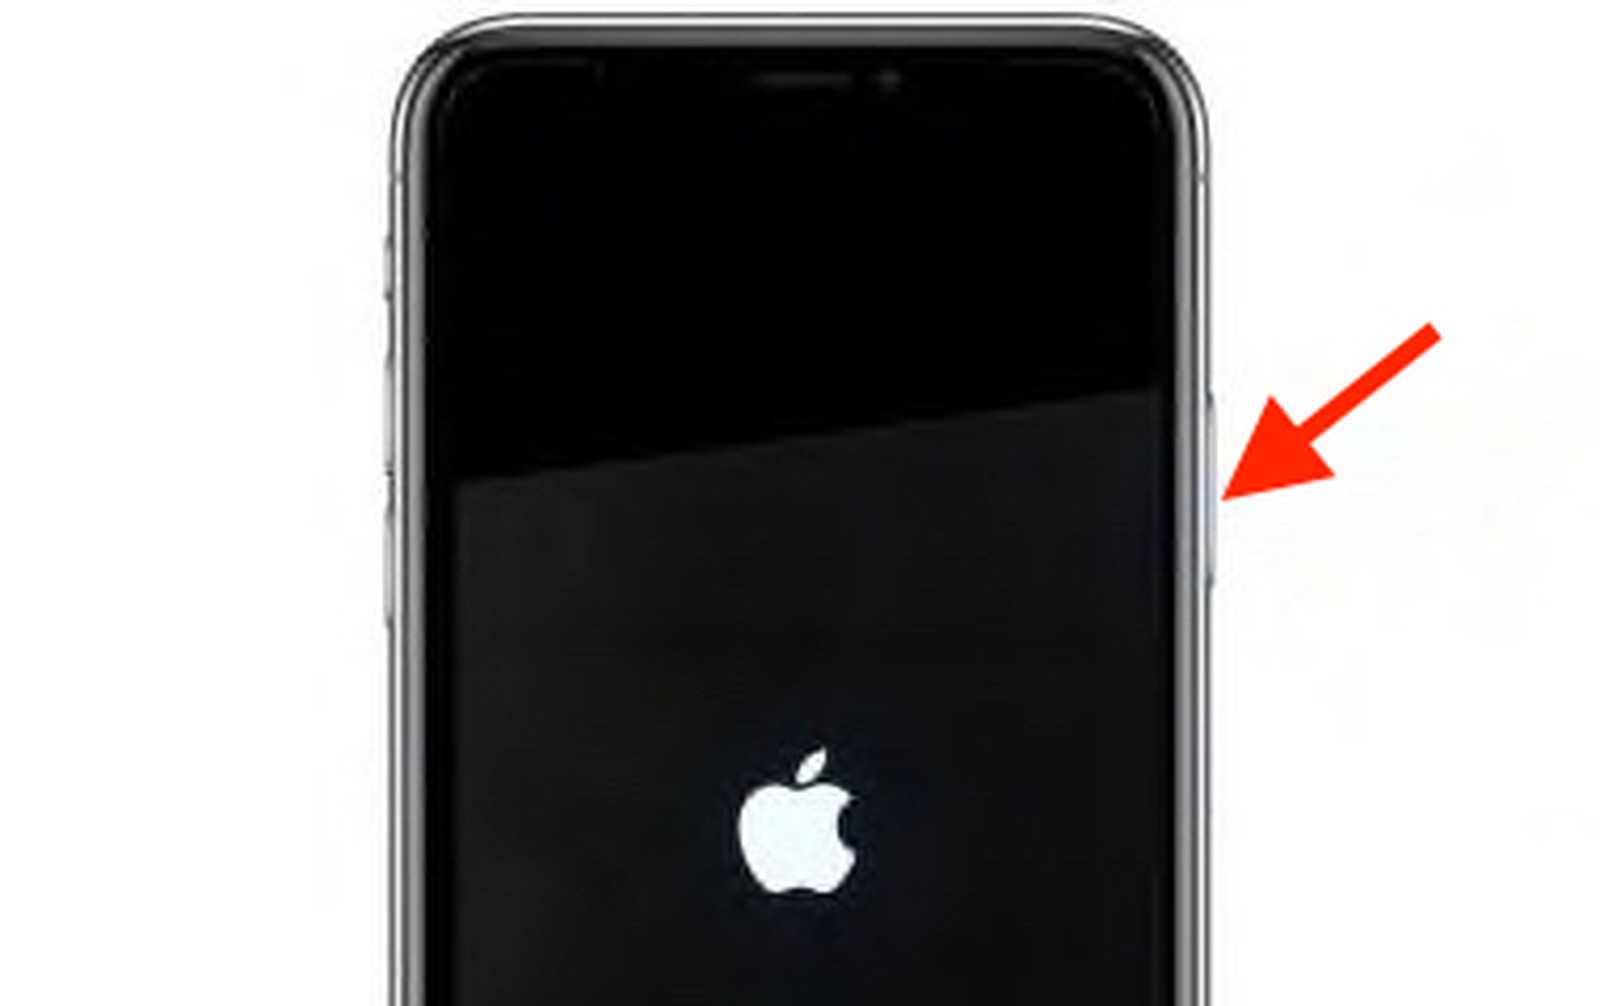 Как перезагрузить айфон x, 8, 7, 6, se двумя кнопками, если он завис?